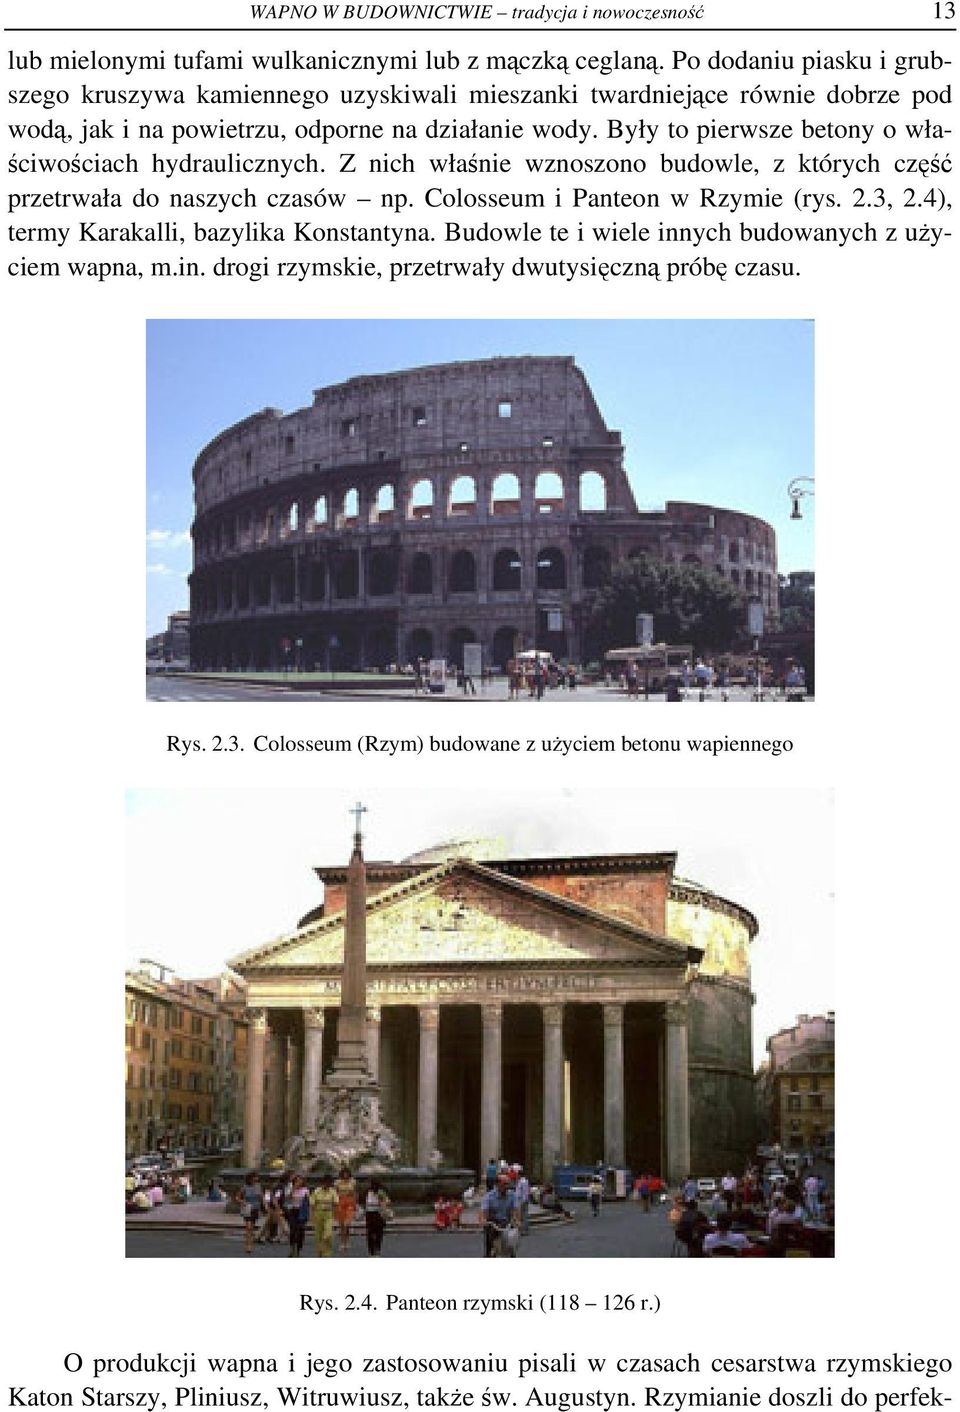 Były to pierwsze betony o właściwościach hydraulicznych. Z nich właśnie wznoszono budowle, z których część przetrwała do naszych czasów np. Colosseum i Panteon w Rzymie (rys. 2.3, 2.